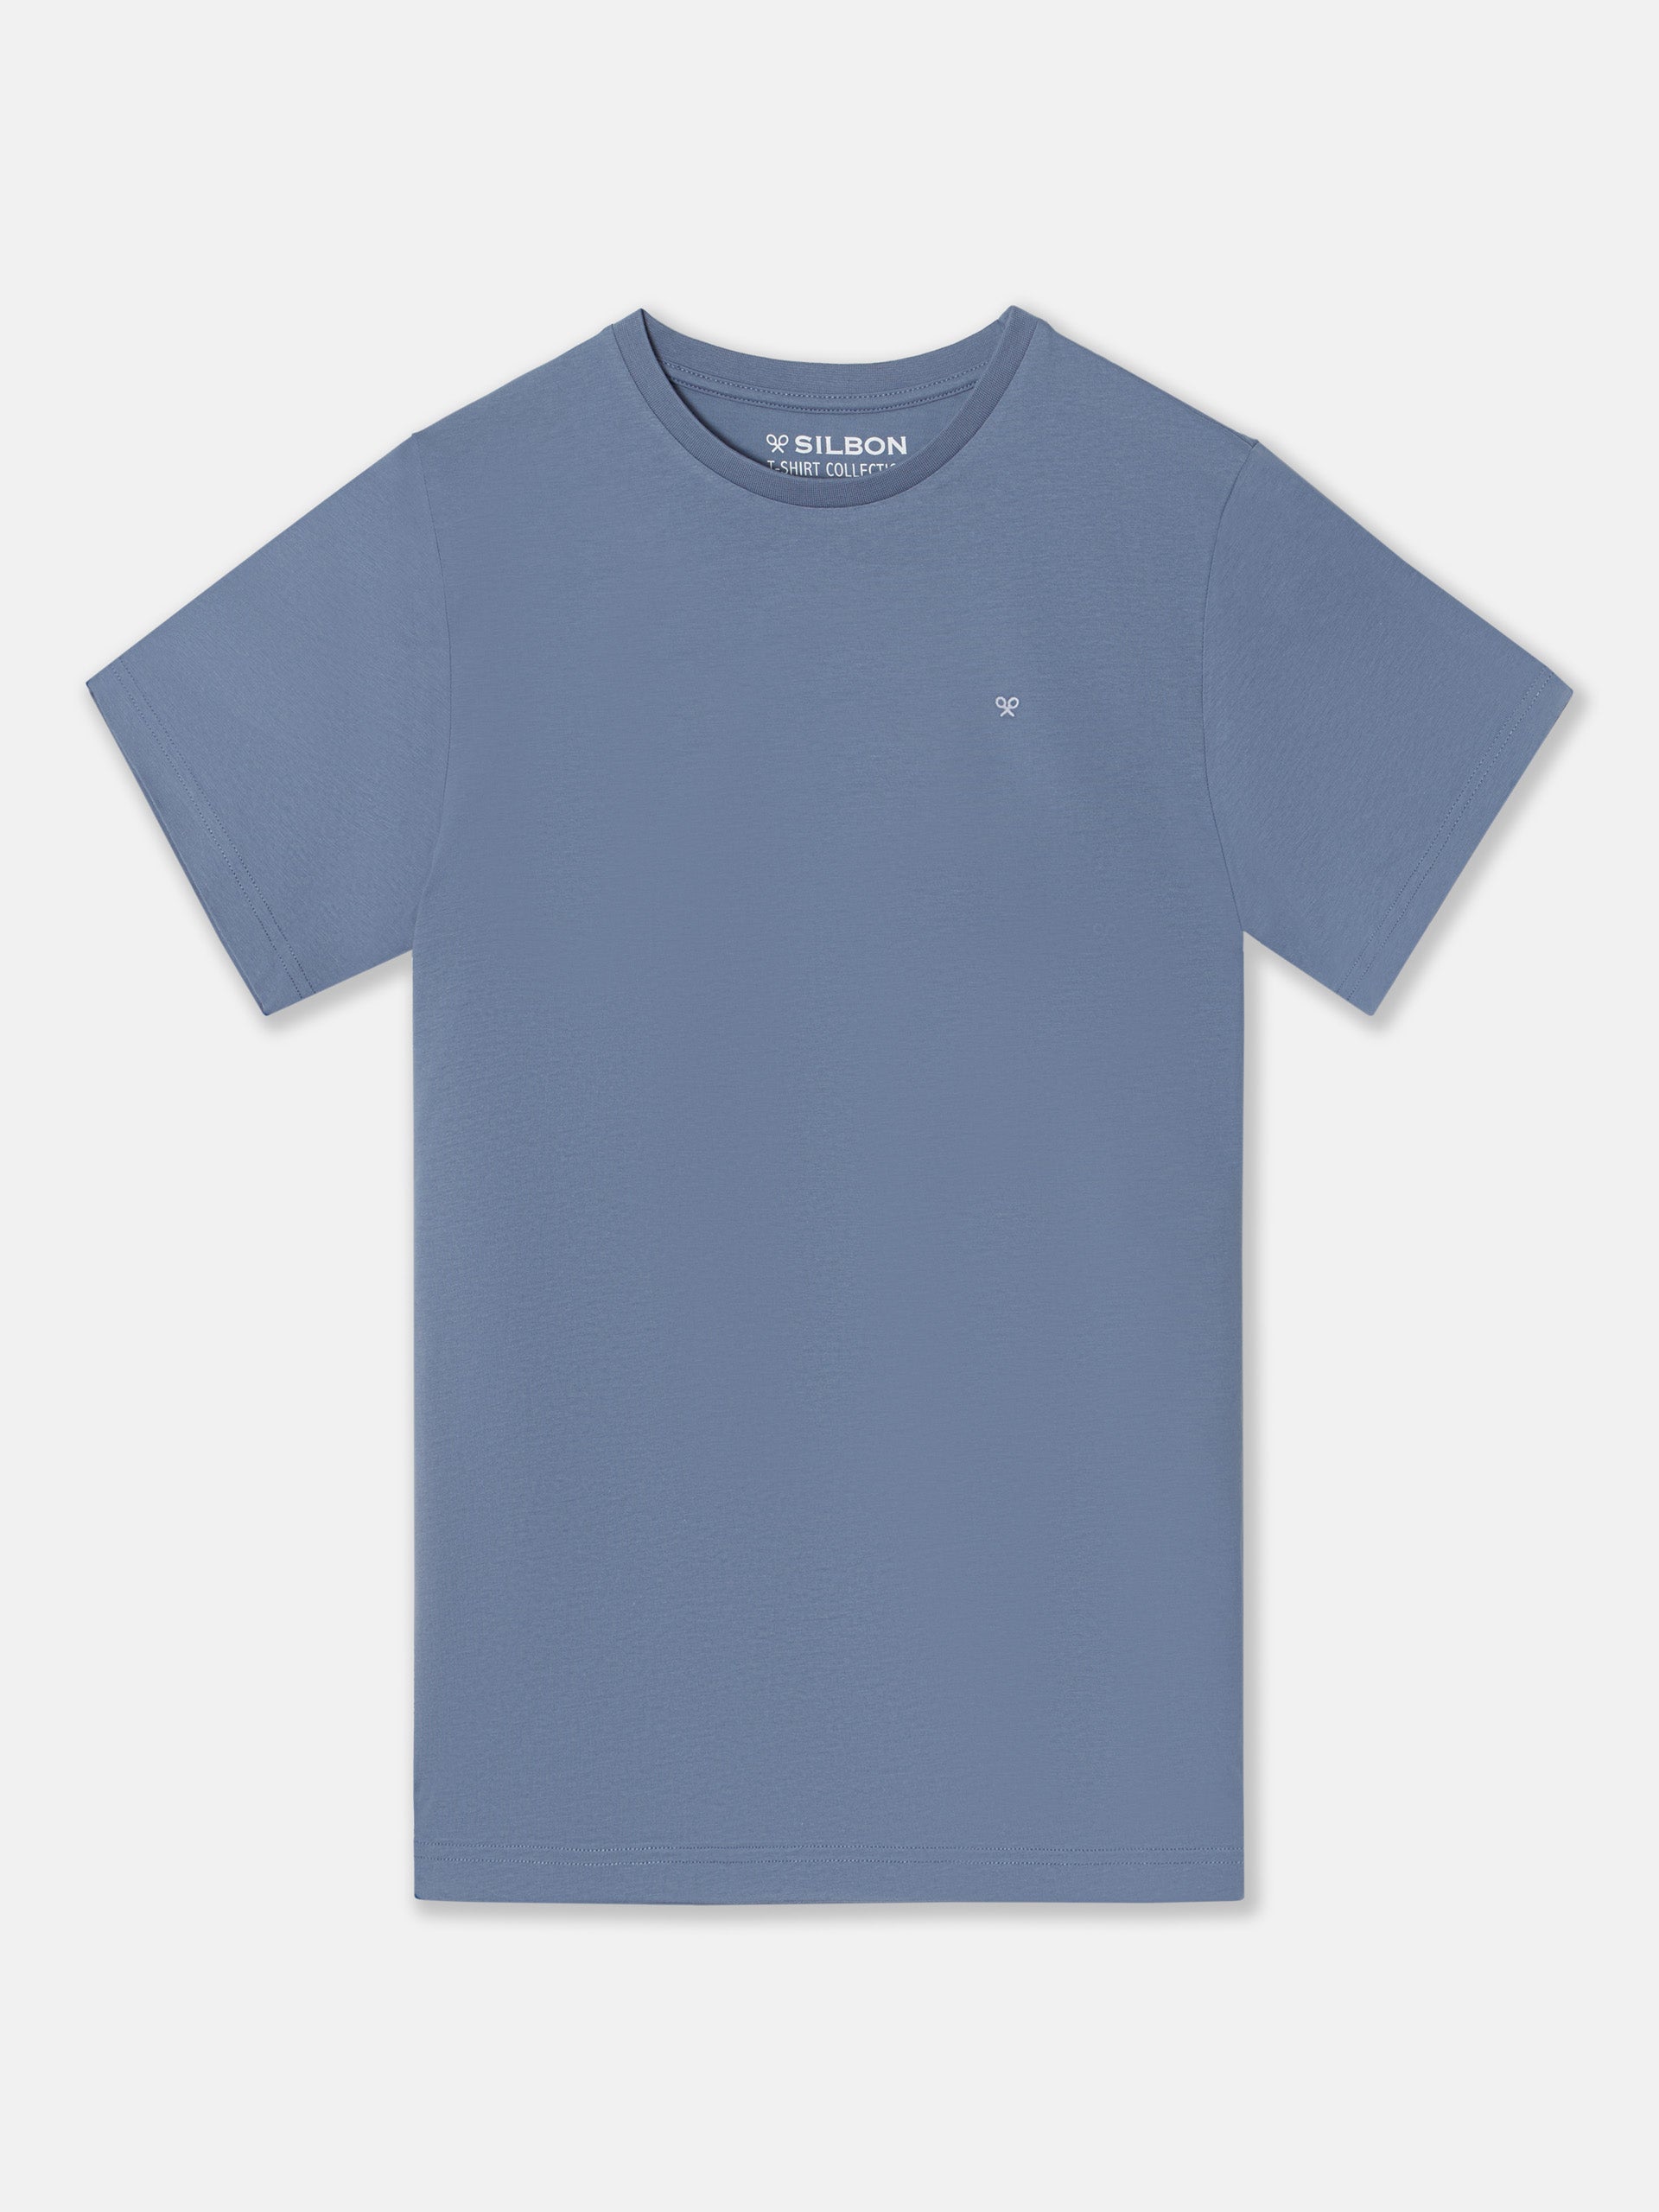 Camiseta silbon minilogo azul